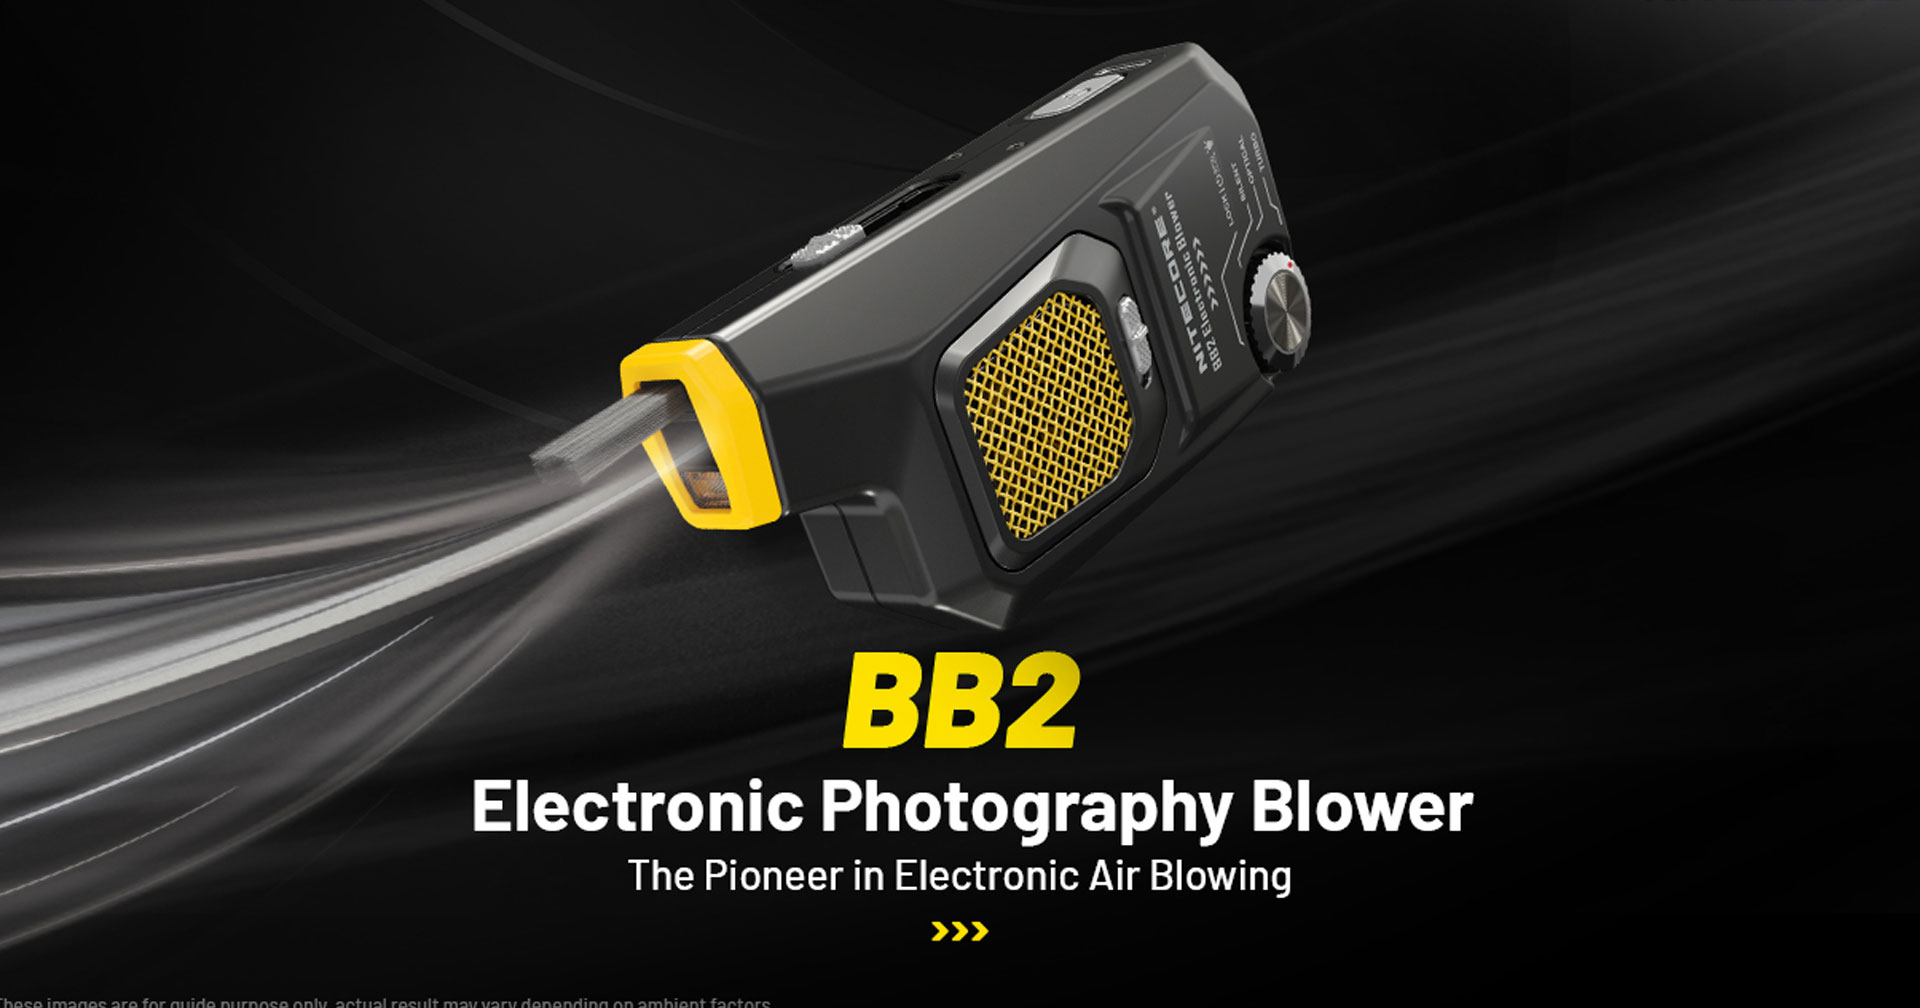 Nitecore BlowerBaby 2 เครื่องเป่าลมทำความสะอาดกล้องรุ่นอัปเกรด ลมแรงกว่าเดิม แบตเตอรี่อึด